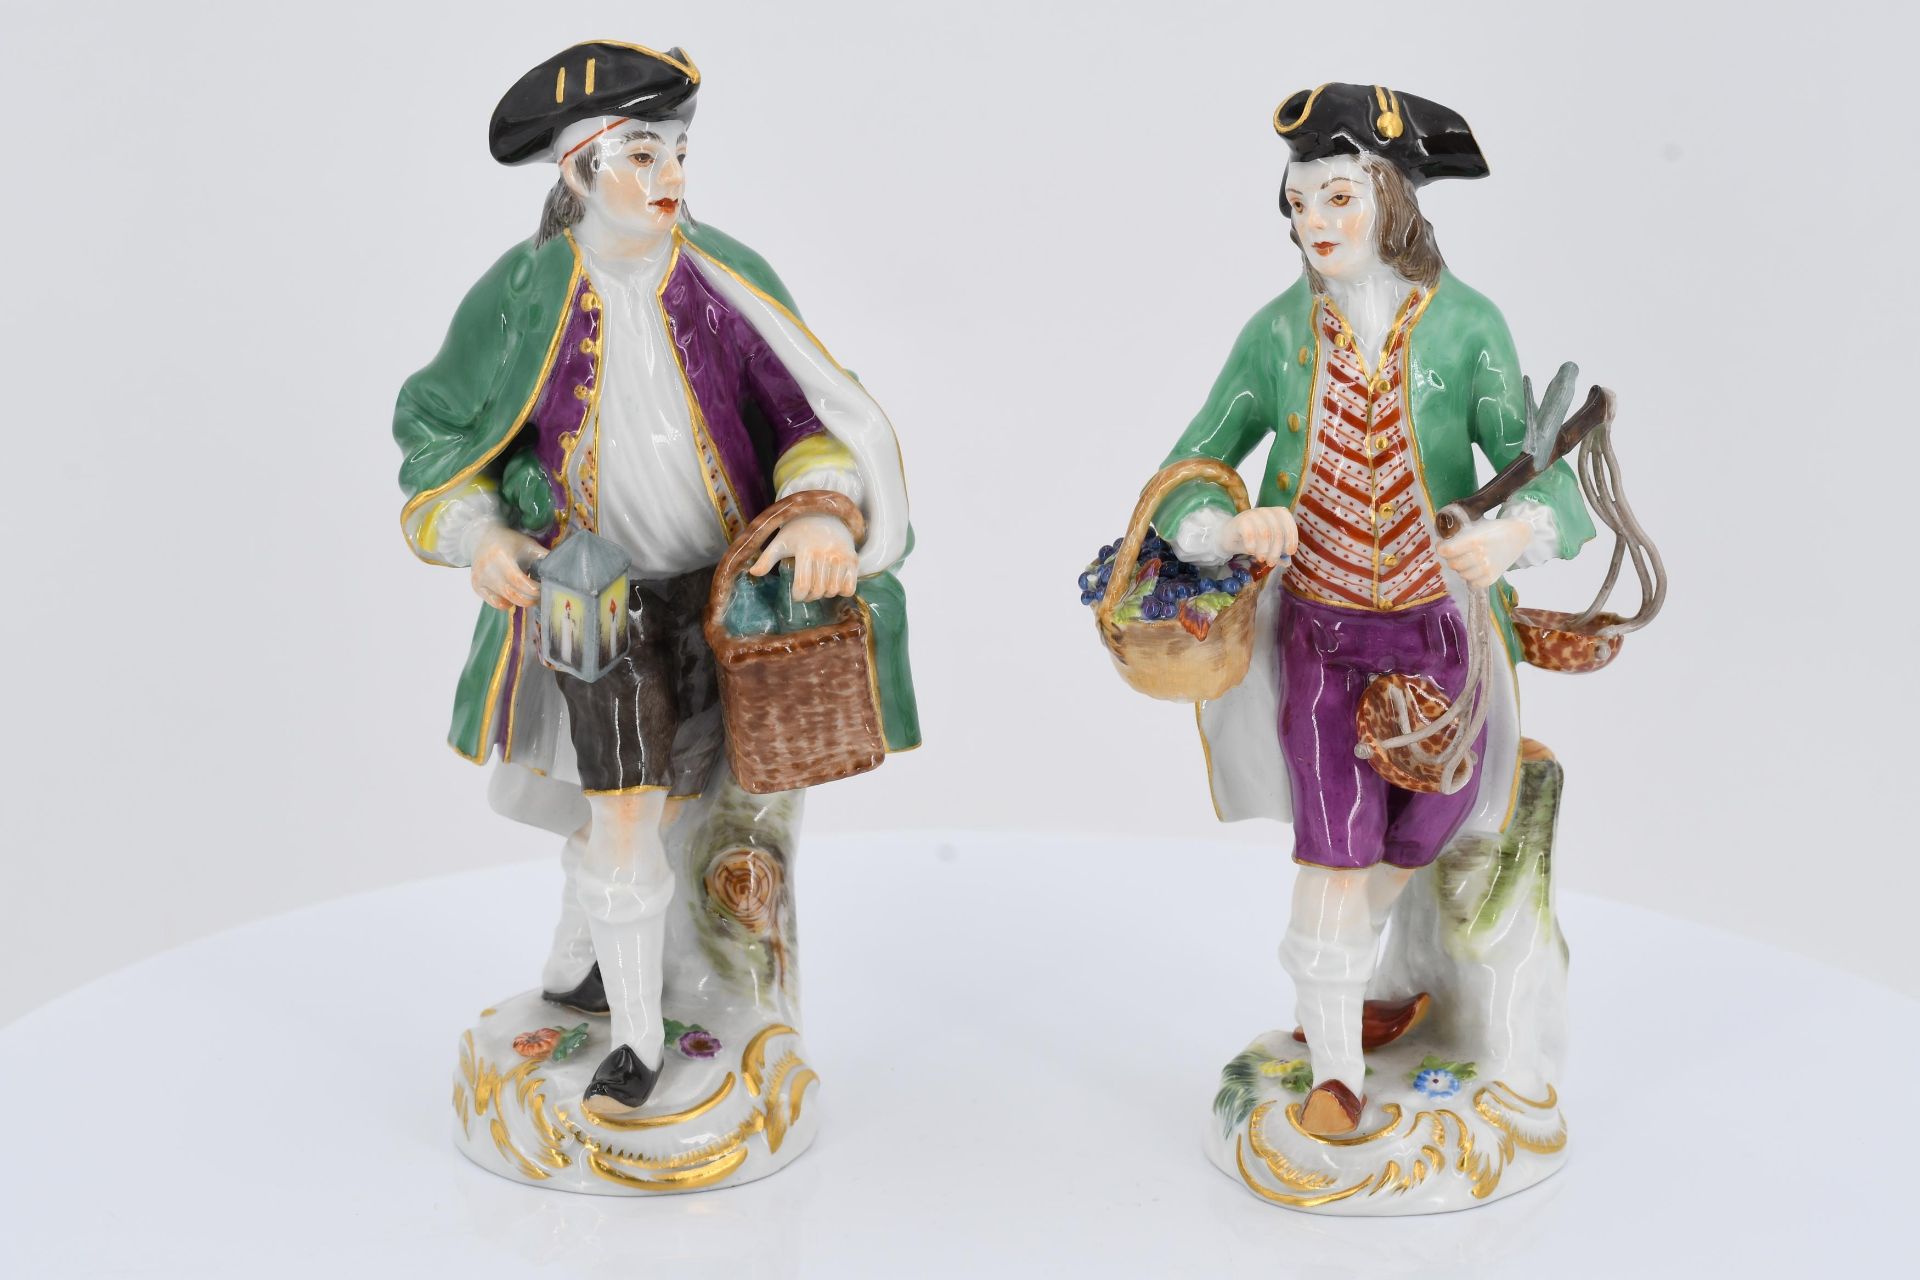 12 porcelain figurines from a series "Cris de Paris" - Image 17 of 27